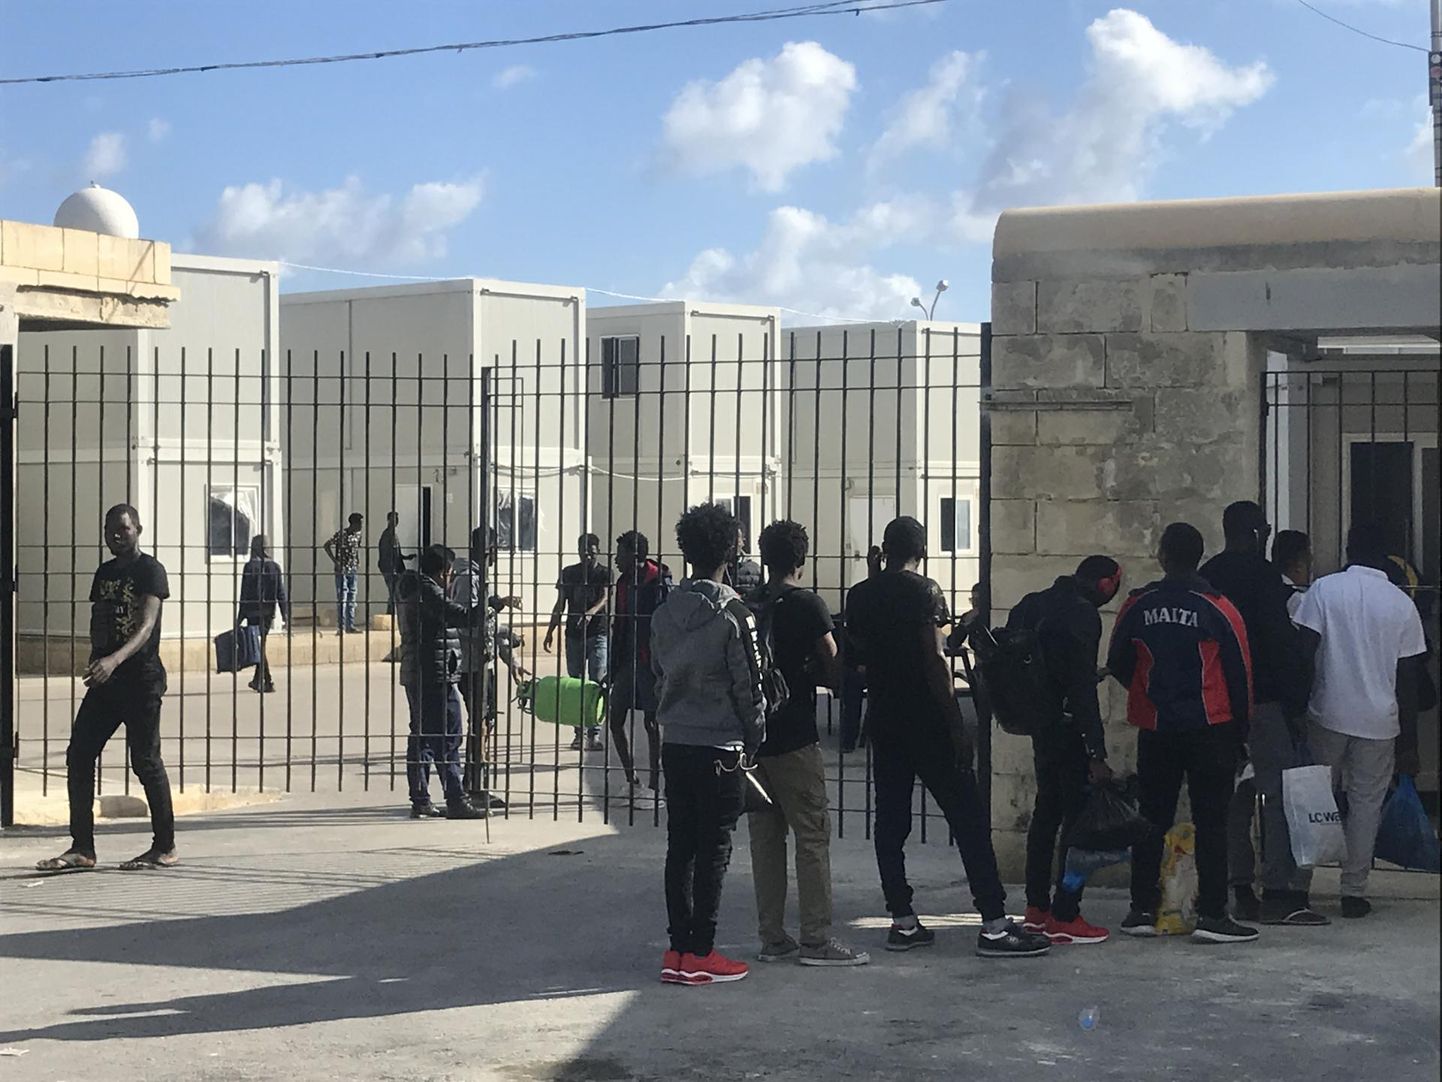 Migrandid Maltal Hal-Fari põgenikekeskuse värava taga. Mullu saabus 440 000 elanikuga saareriiki üle 3400 migrandi, mis teeb Maltast suhtarvult kõige suuremat illegaalse migratsiooni koormat kandva Euroopa riigi.